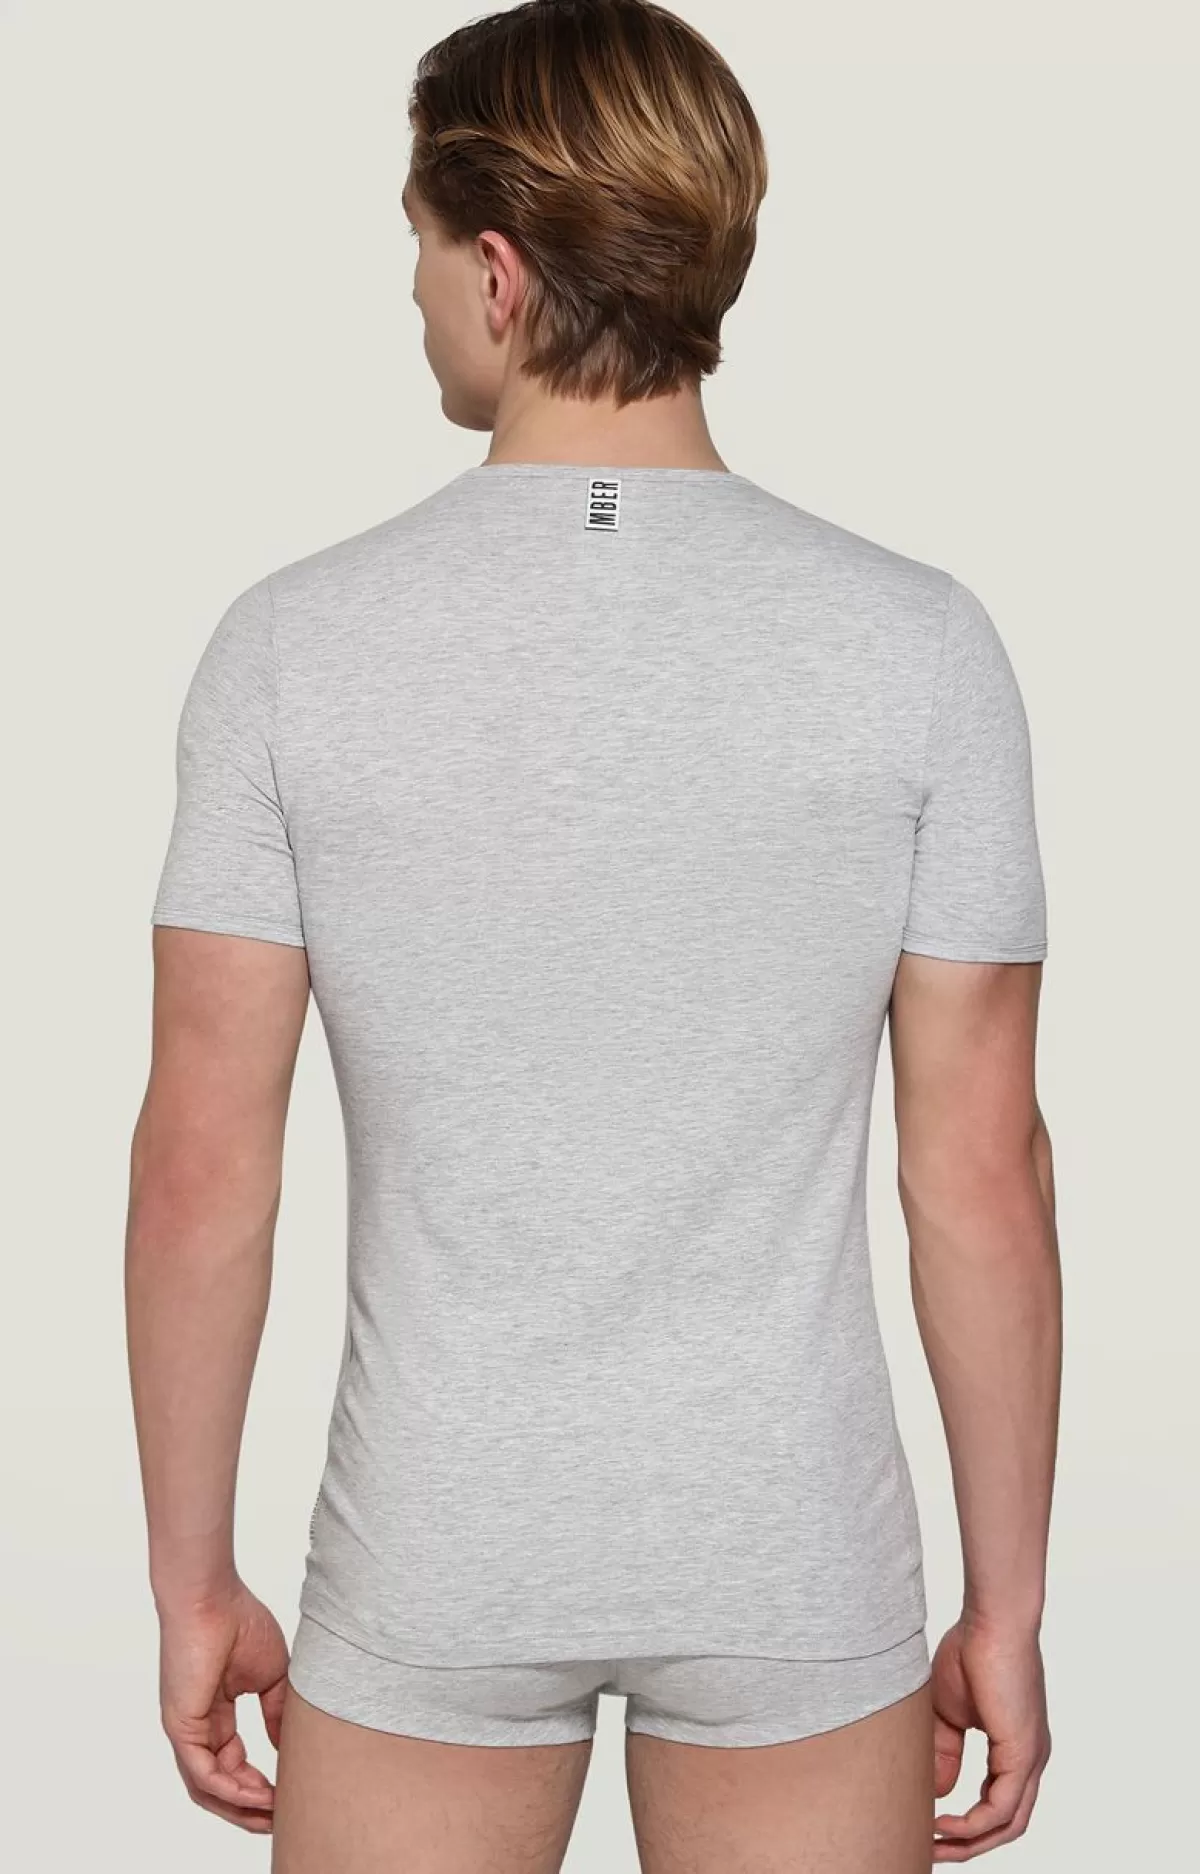 Bikkembergs Men'S Round Neck Undershirt Grey Melange Best Sale